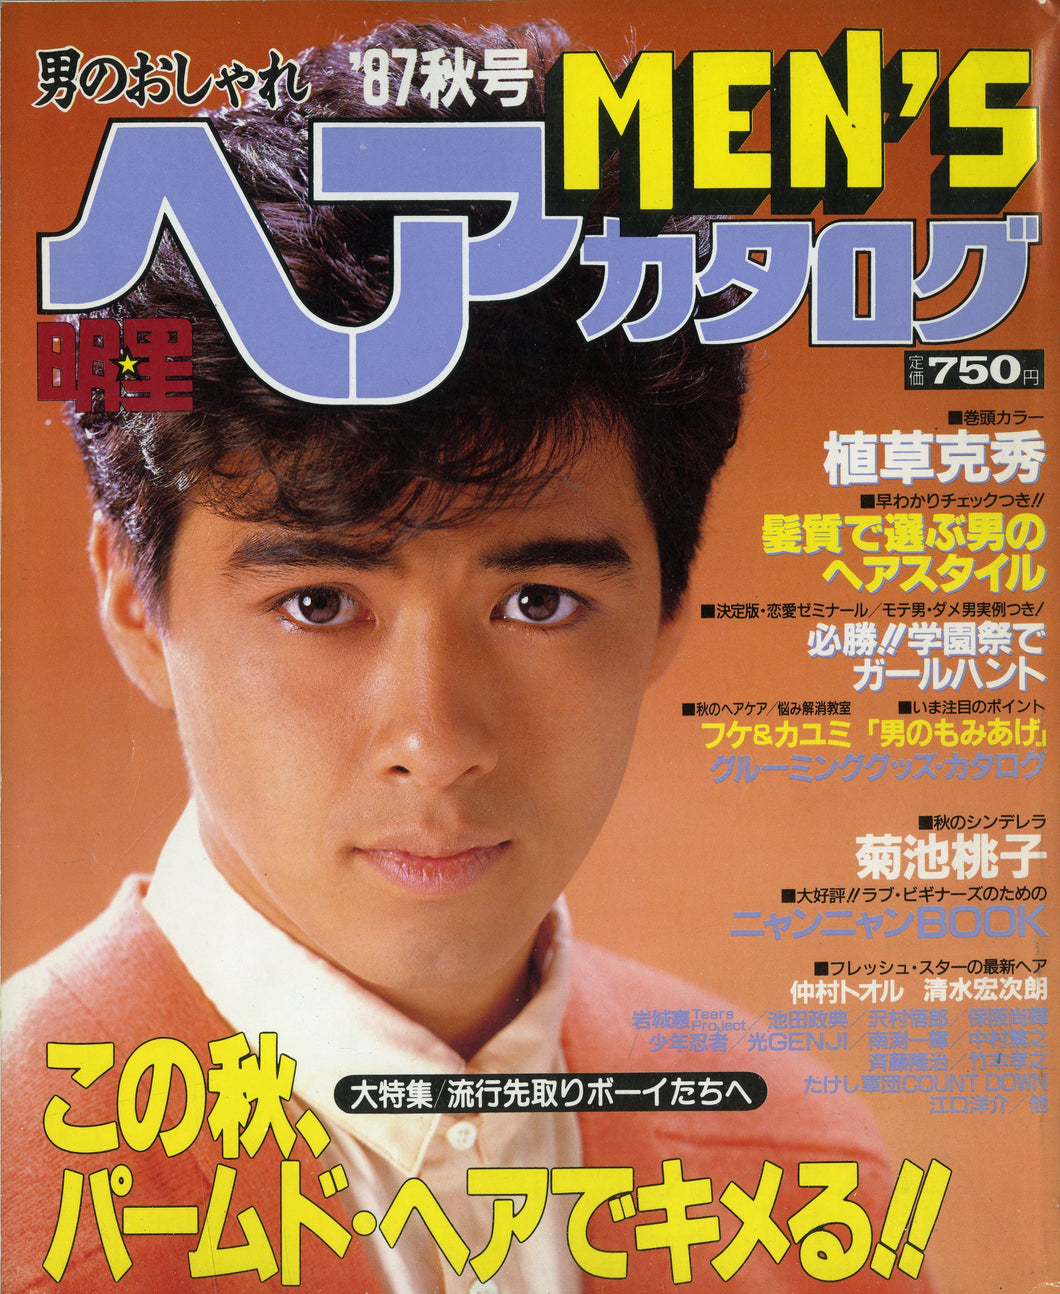 男のおしゃれ 明星ヘアカタログ MEN'S '87 秋 [表紙:植草克秀]